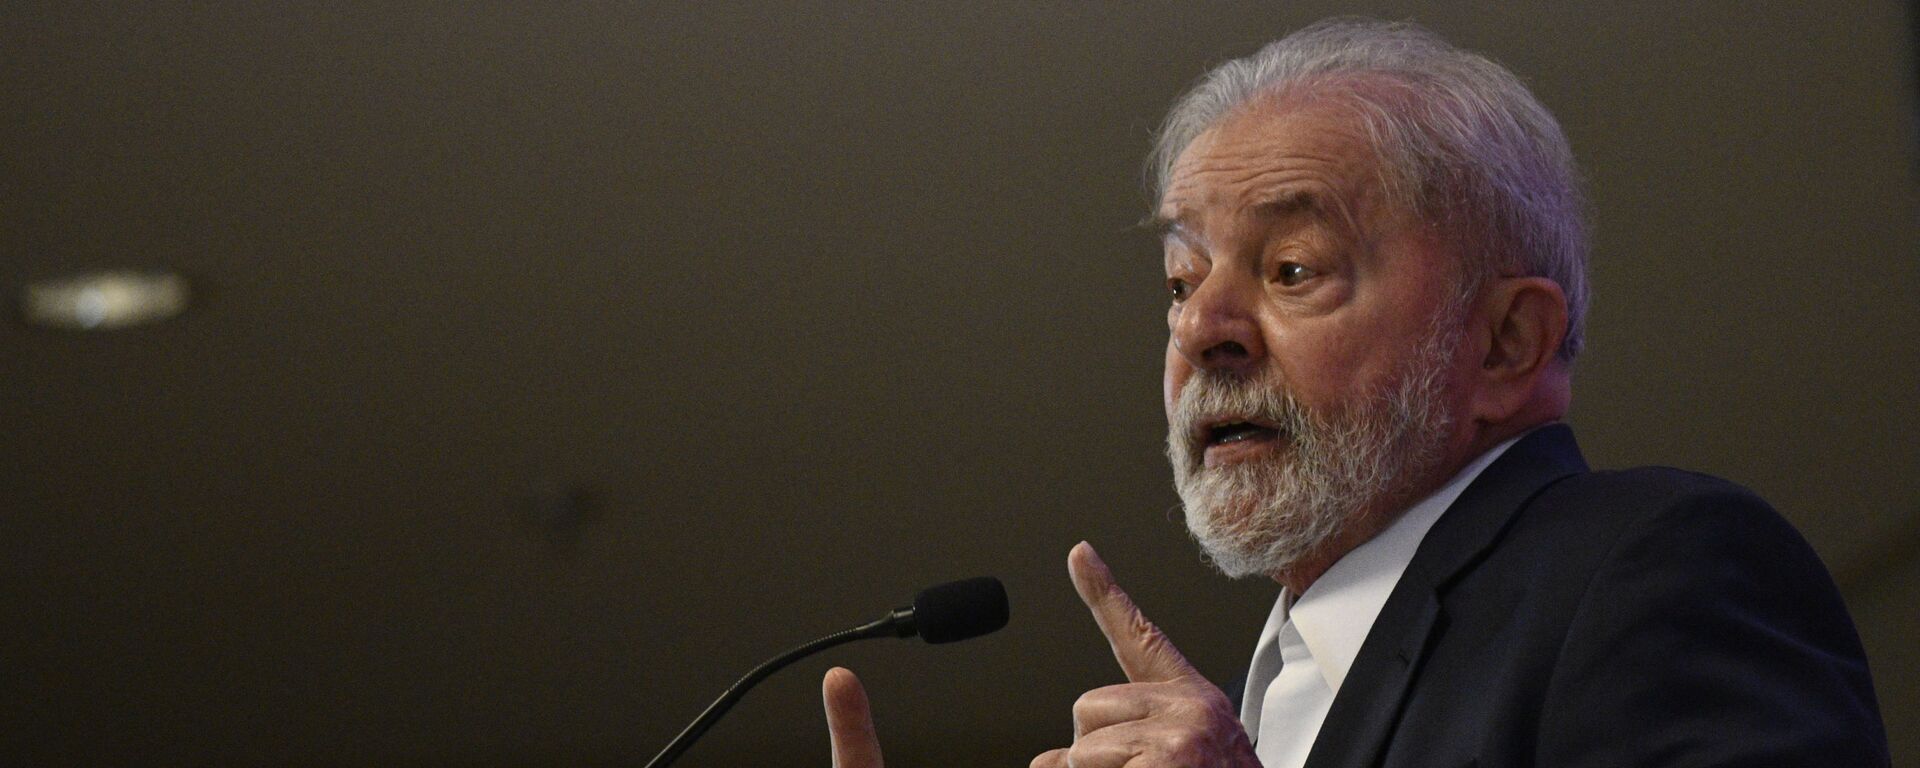 O ex-presidente Luiz Inácio Lula da Silva (PT) durante coletiva de imprensa realizada em Brasília, 8 de outubro de 2021 - Sputnik Brasil, 1920, 02.11.2021